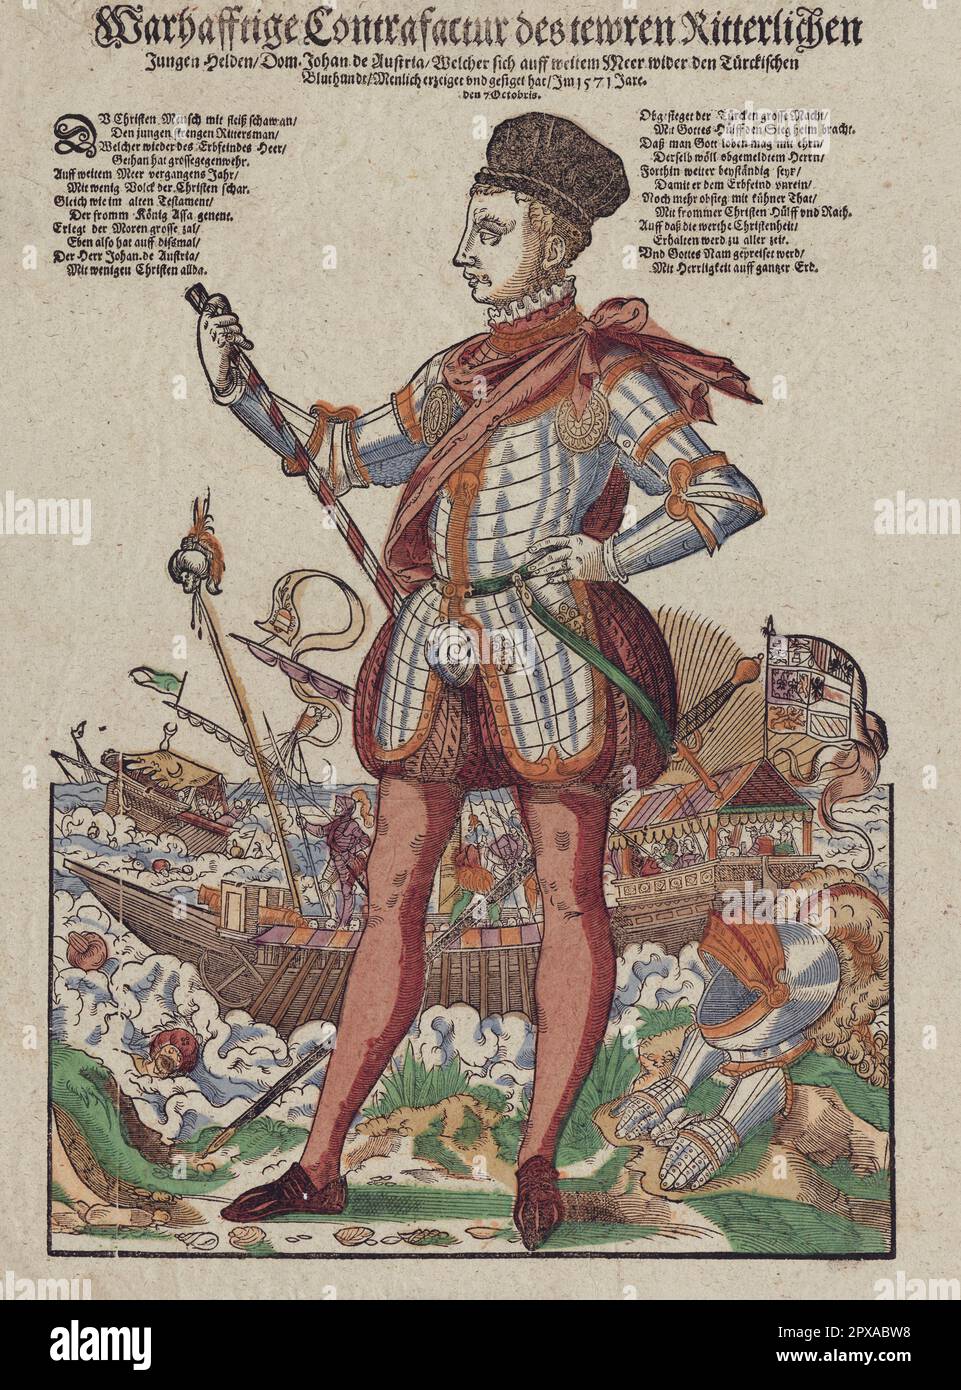 Incisione di Giovanni d'Austria. 1571 Giovanni d'Austria (spagnolo: Juan, 1547 – 1578) era un figlio illegittimo dell'imperatore del Sacro Romano Impero Carlo V. divenne un capo militare al servizio del suo fratellastro, re Filippo II di Spagna, ed è meglio conosciuto per il suo ruolo di ammiraglio della flotta della Santa Alleanza nella Battaglia di Lepanto. Foto Stock